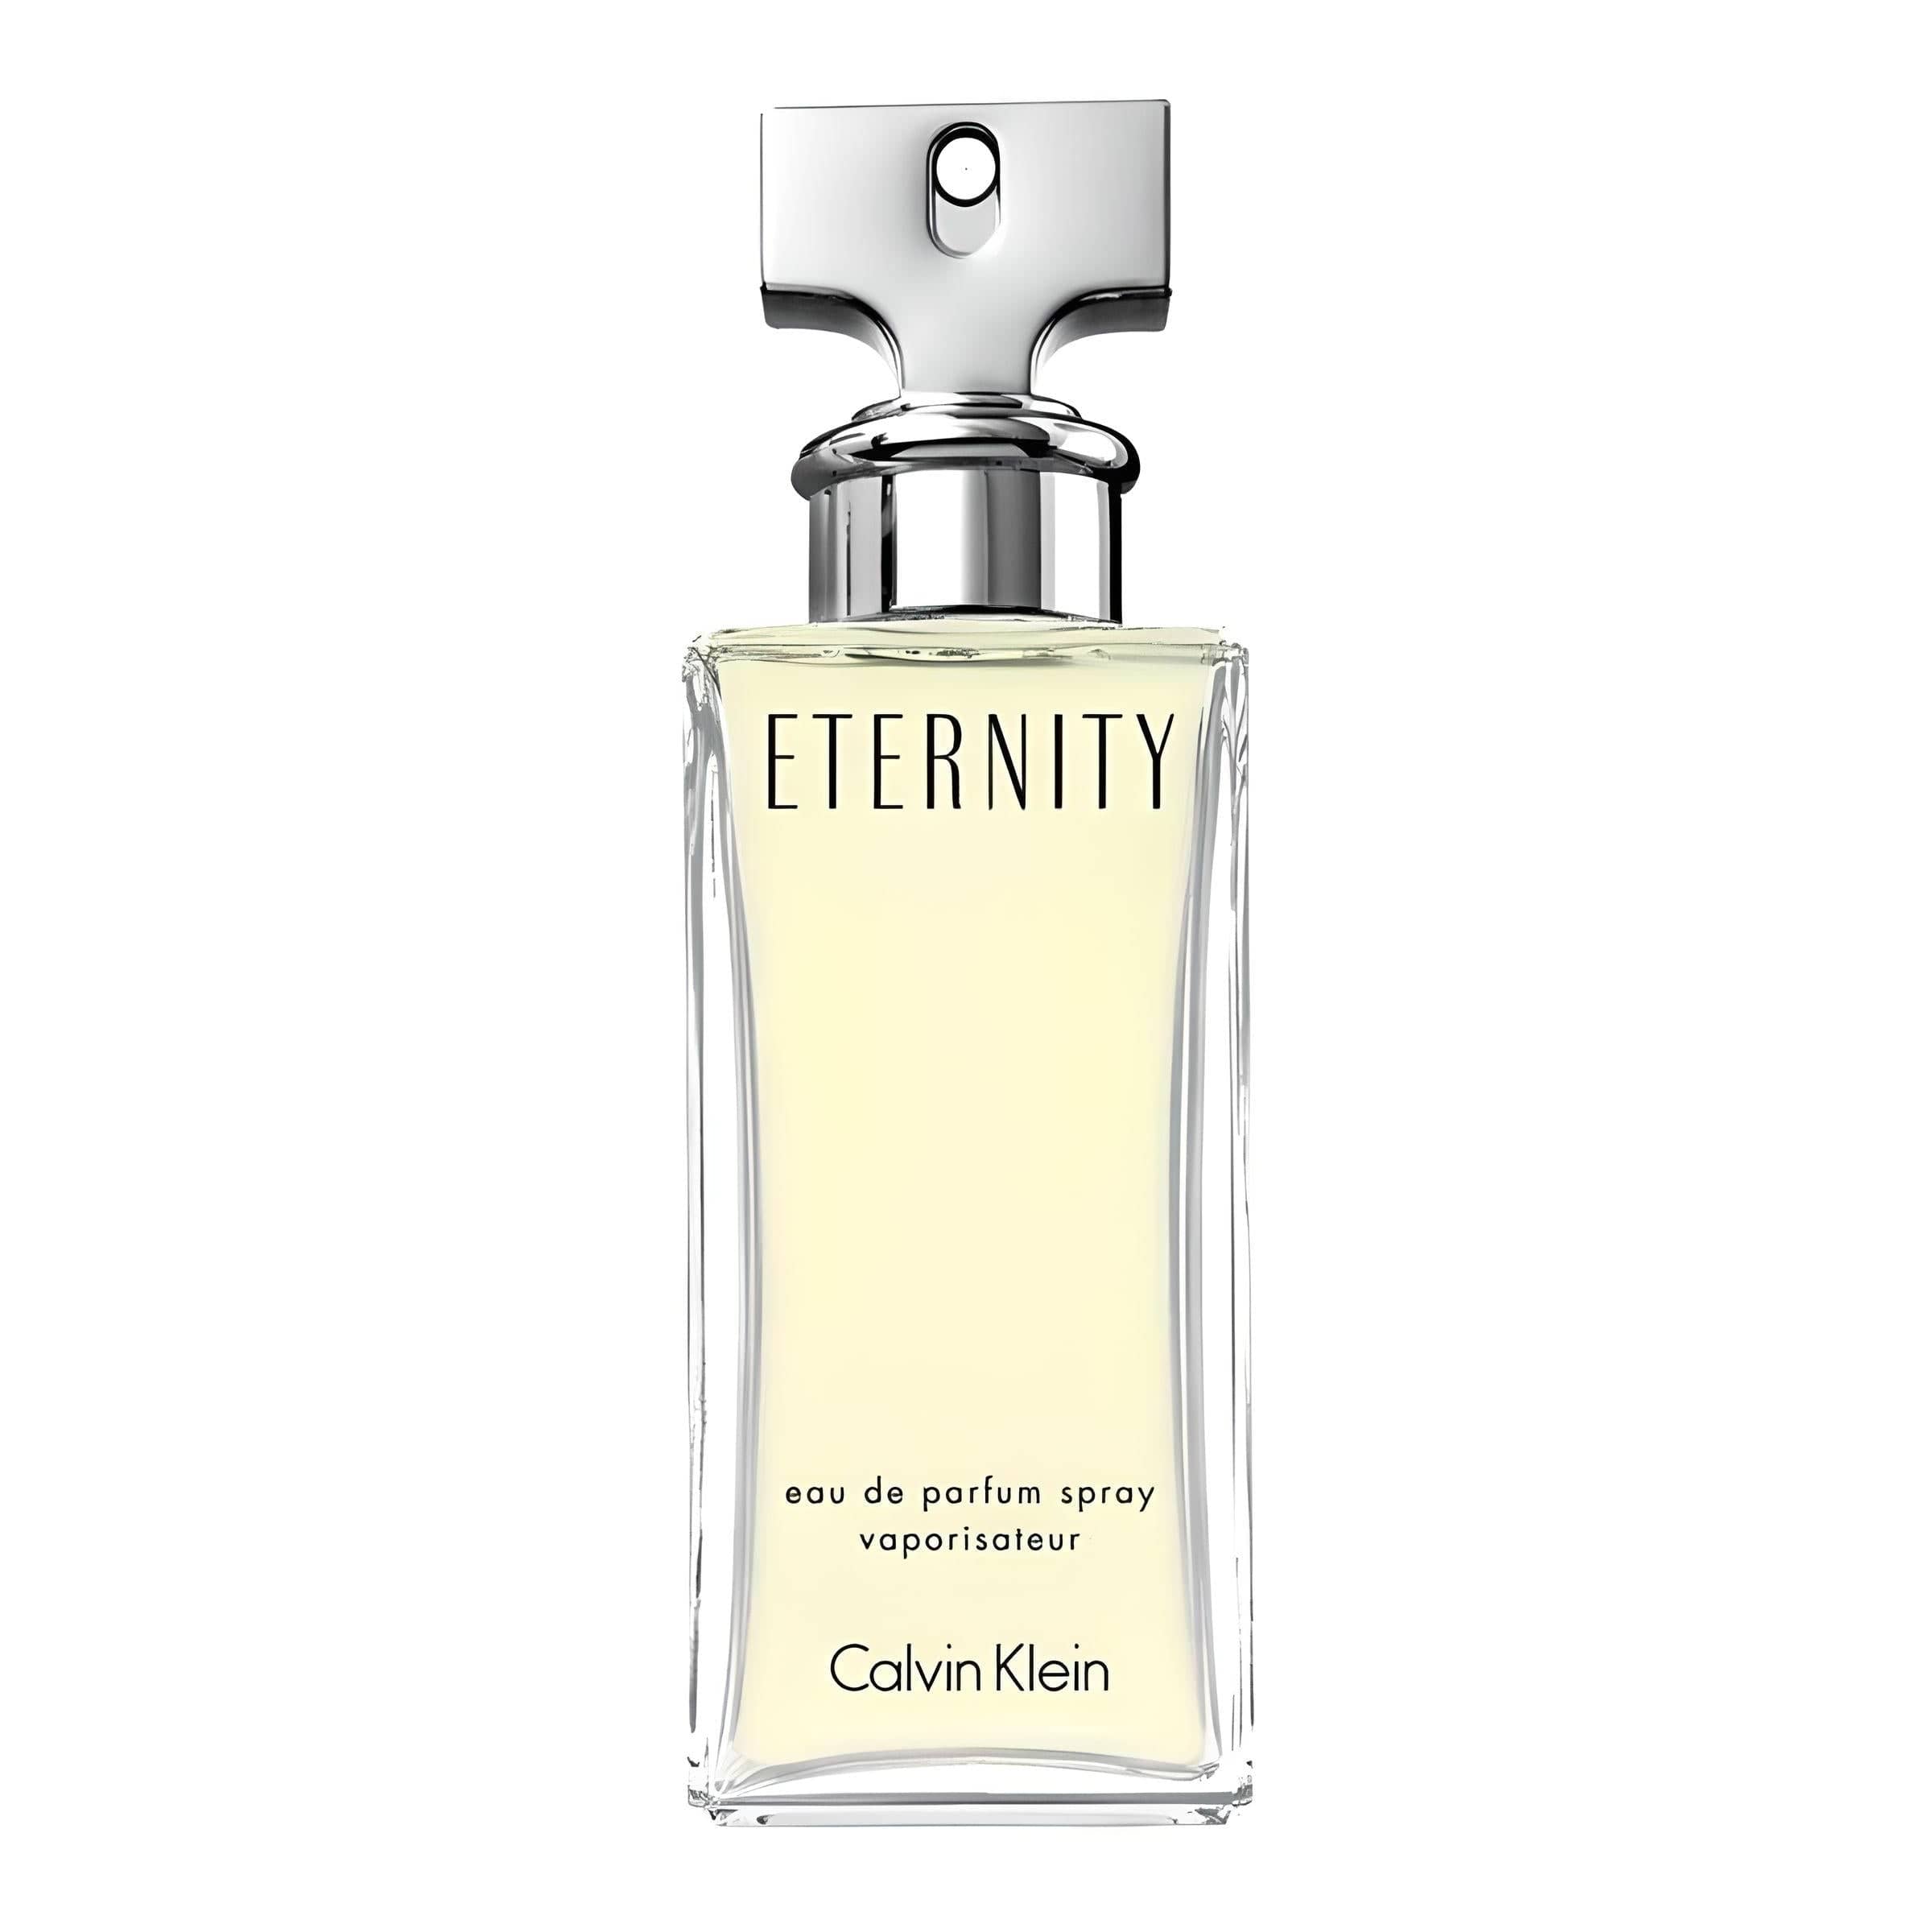 ETERNITY Eau de Parfum